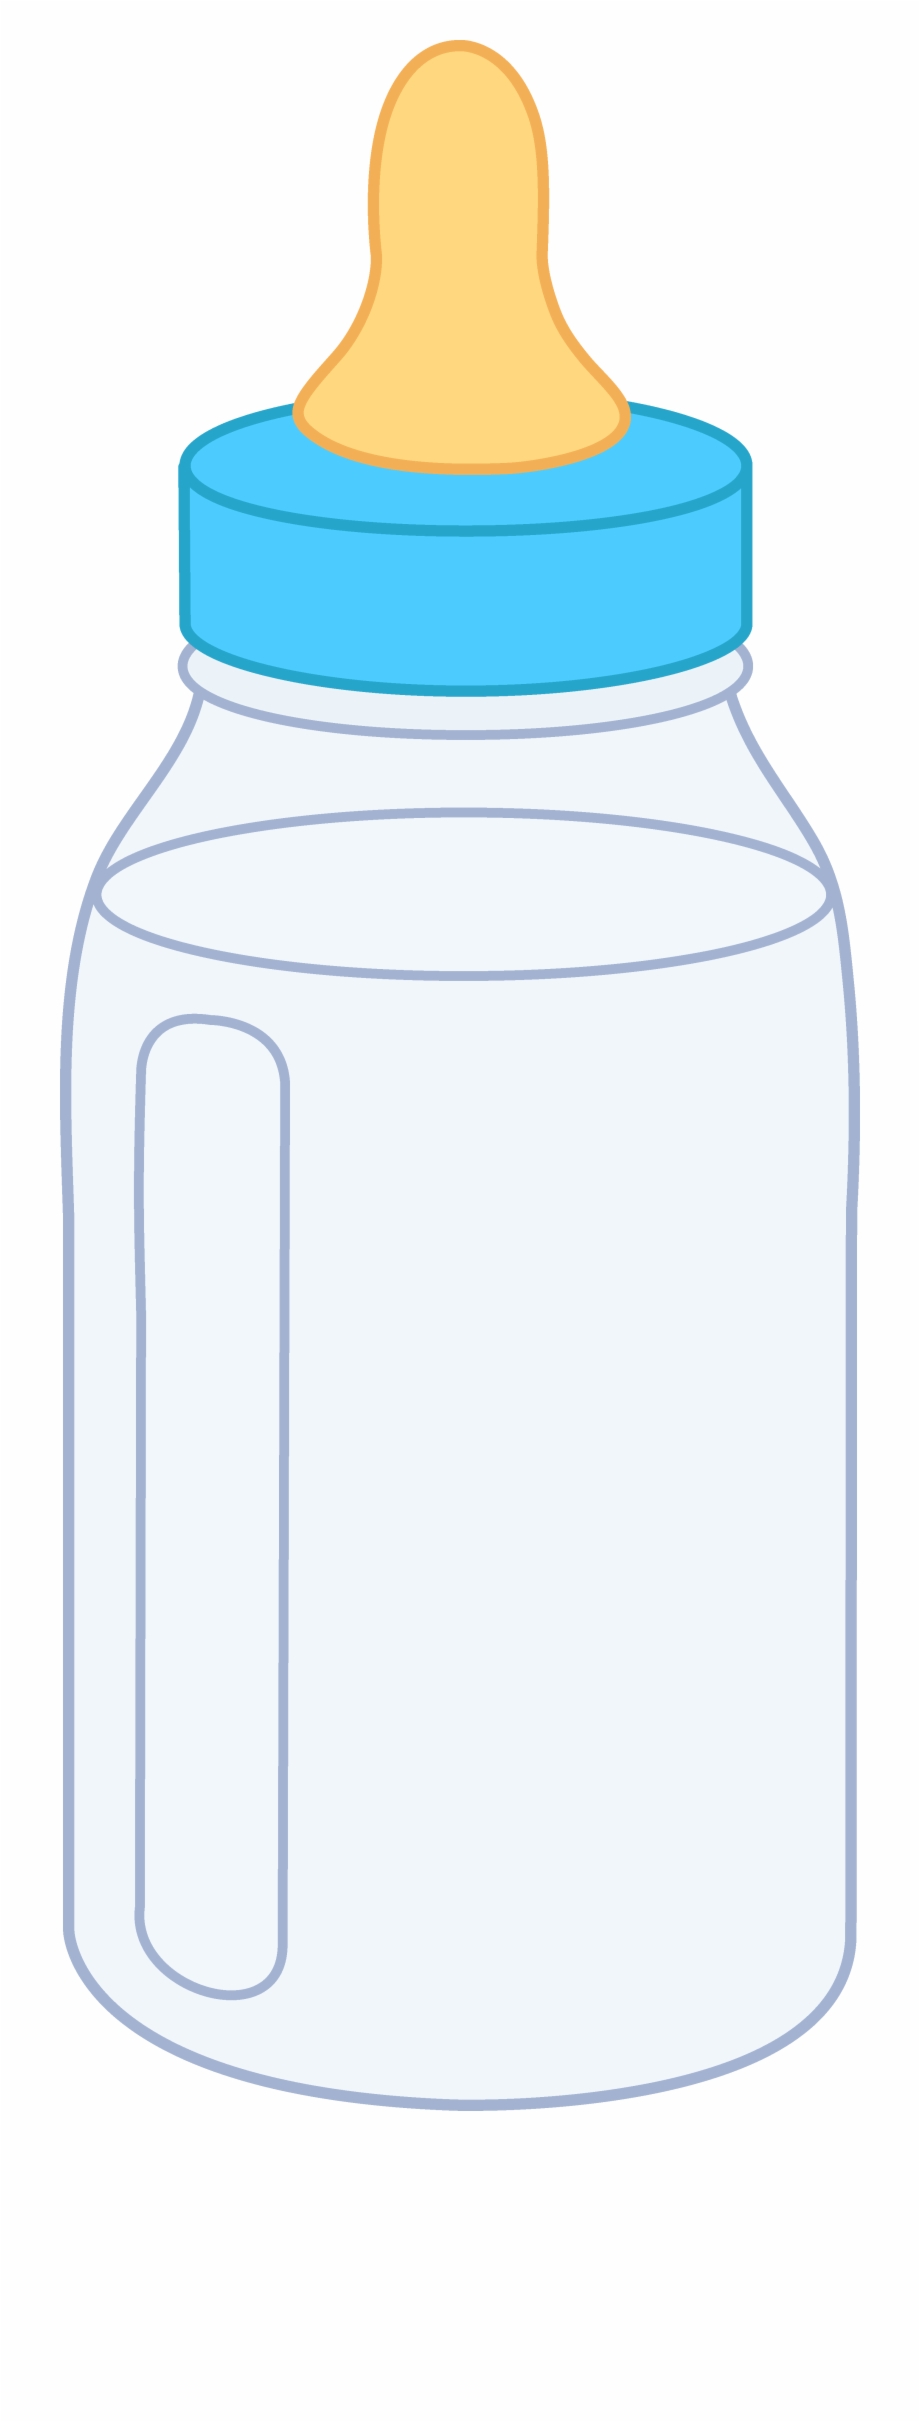 Baby bottle Infant Milk Clip art